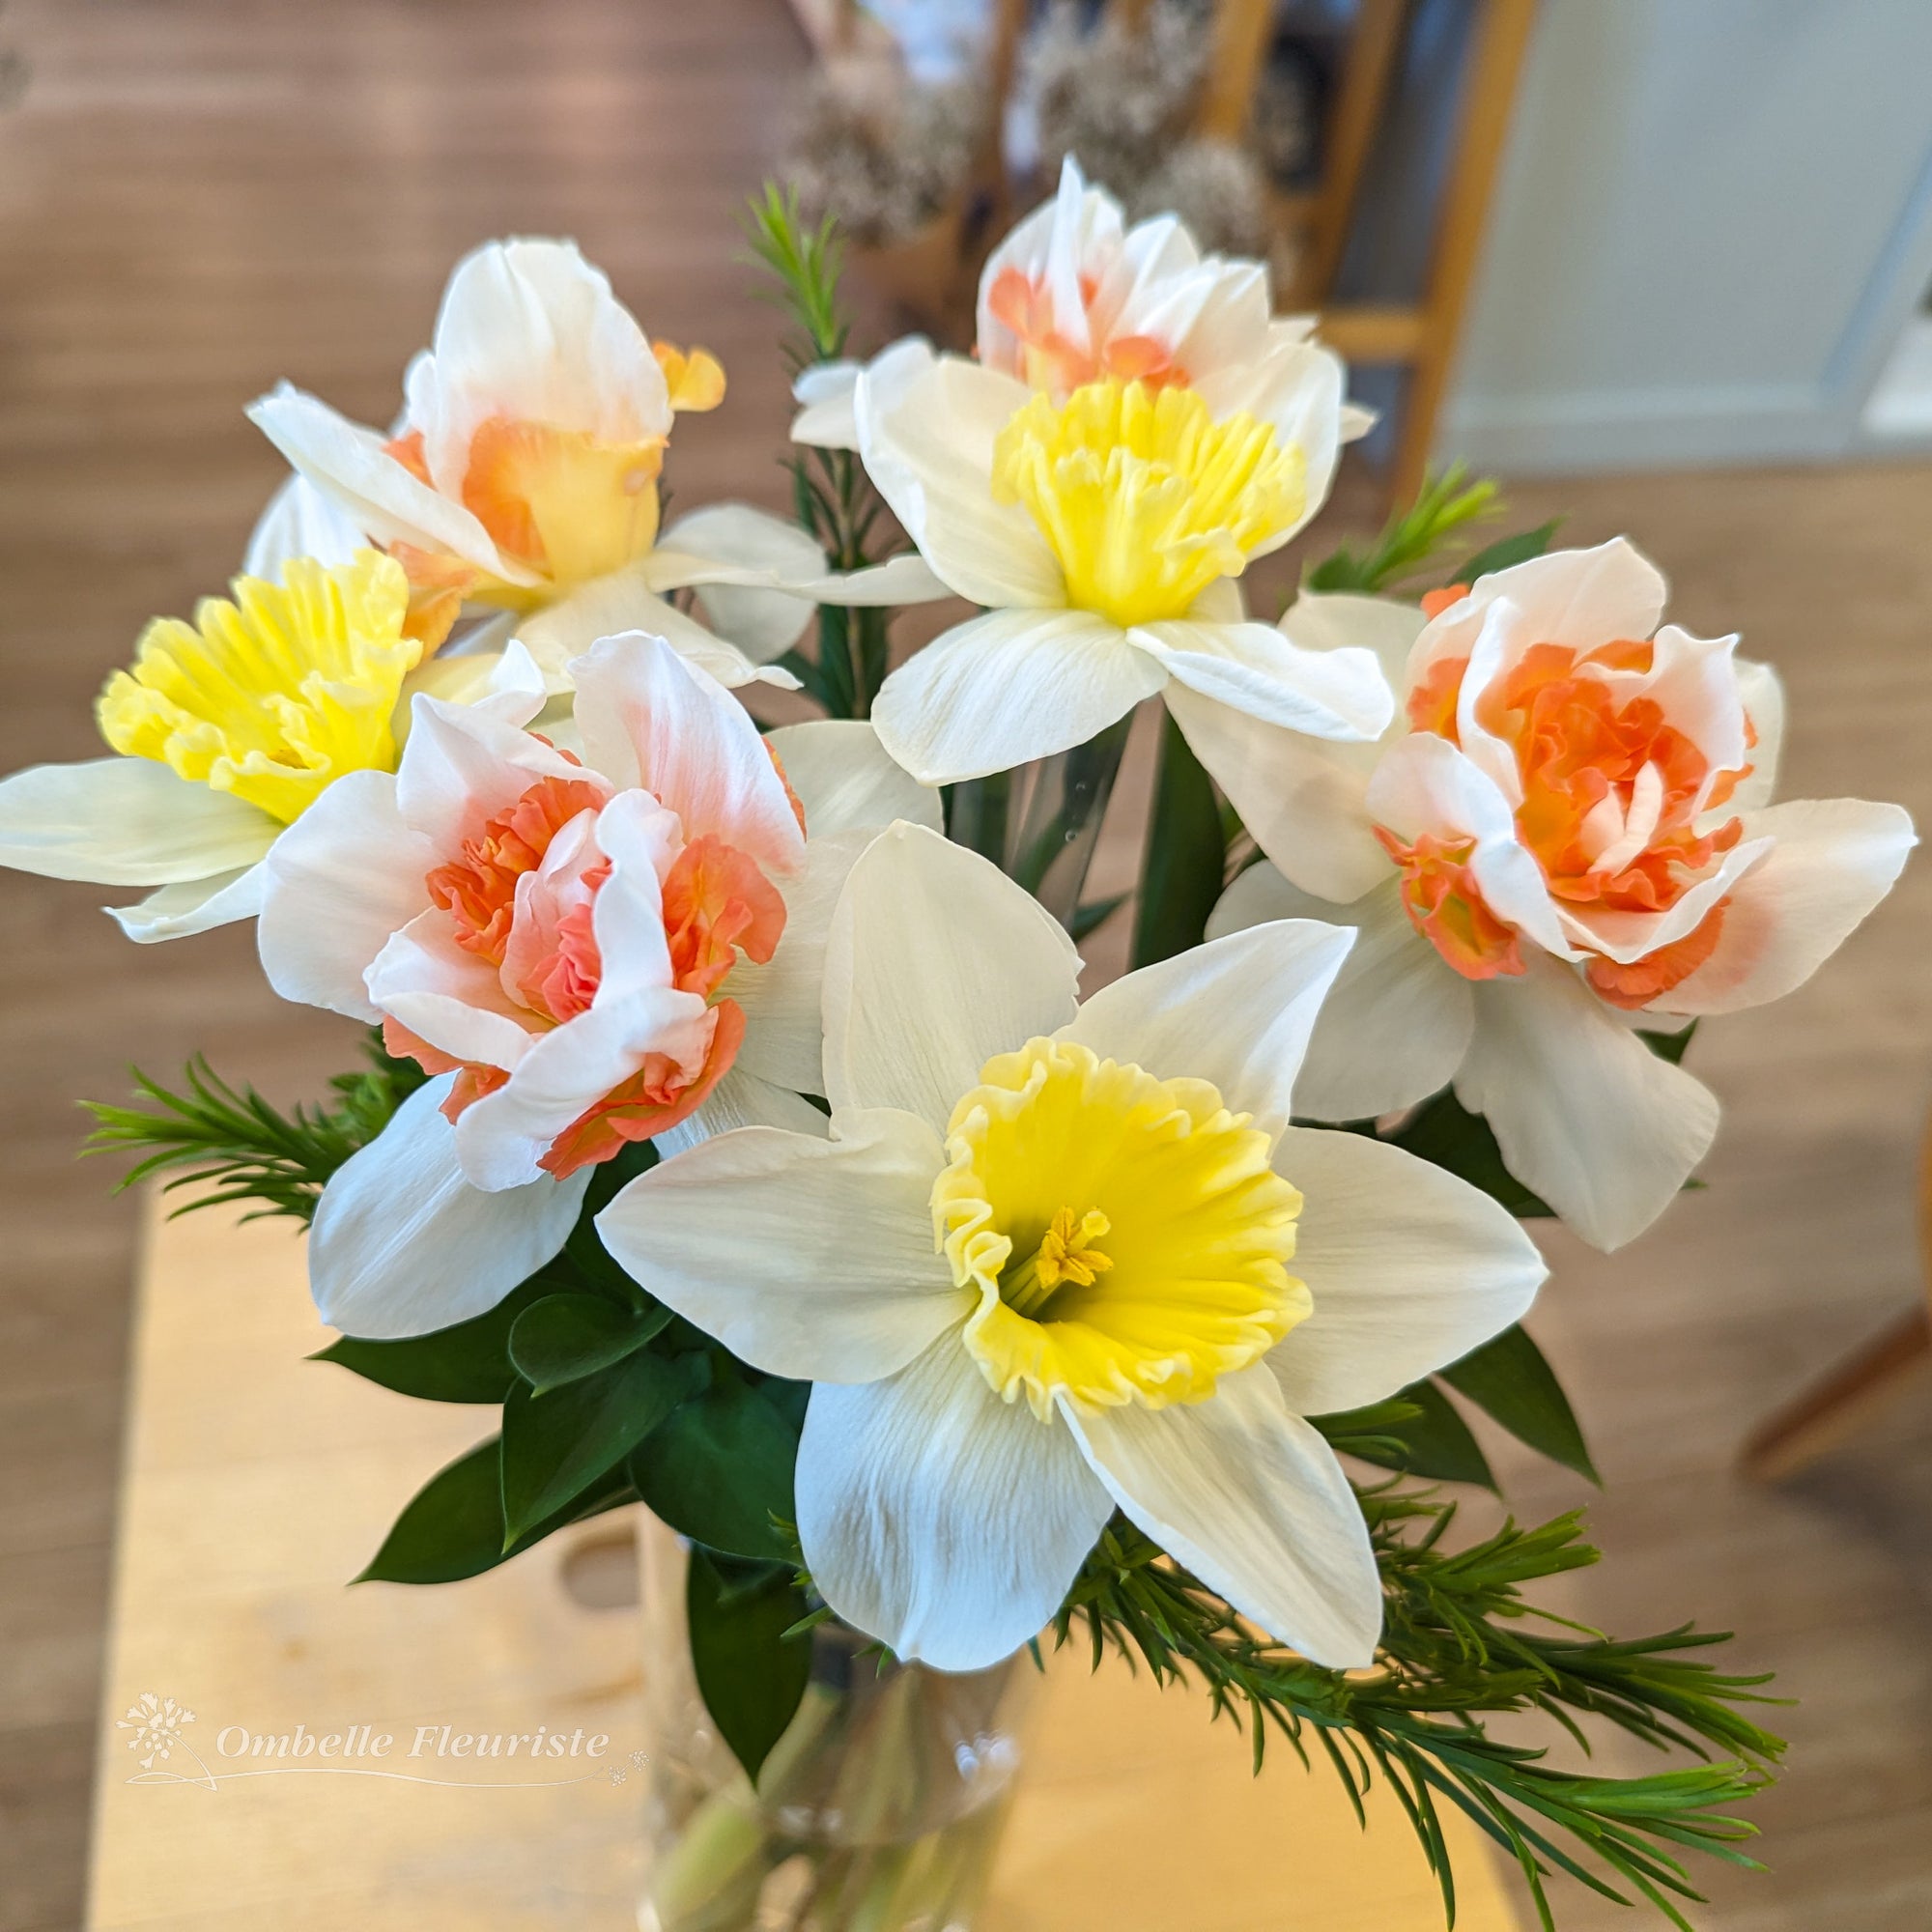 Bouquet de narcisses (jonquilles cultivées au Québec)